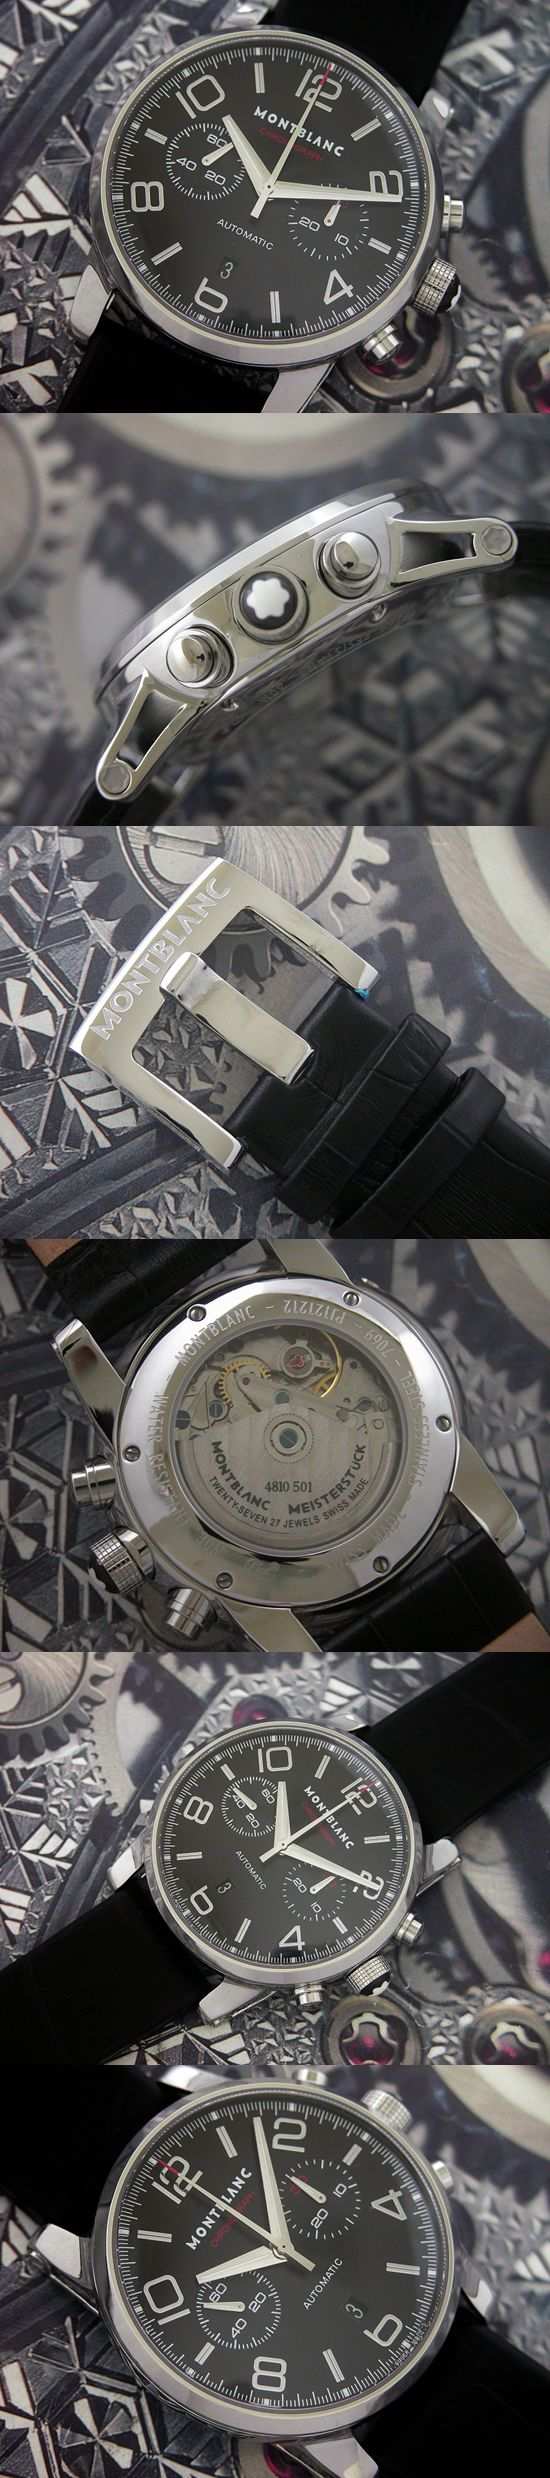 おしゃれなブランド時計がMONTBLANC-モンブラン-36972-af 男性用腕時計を提供します.